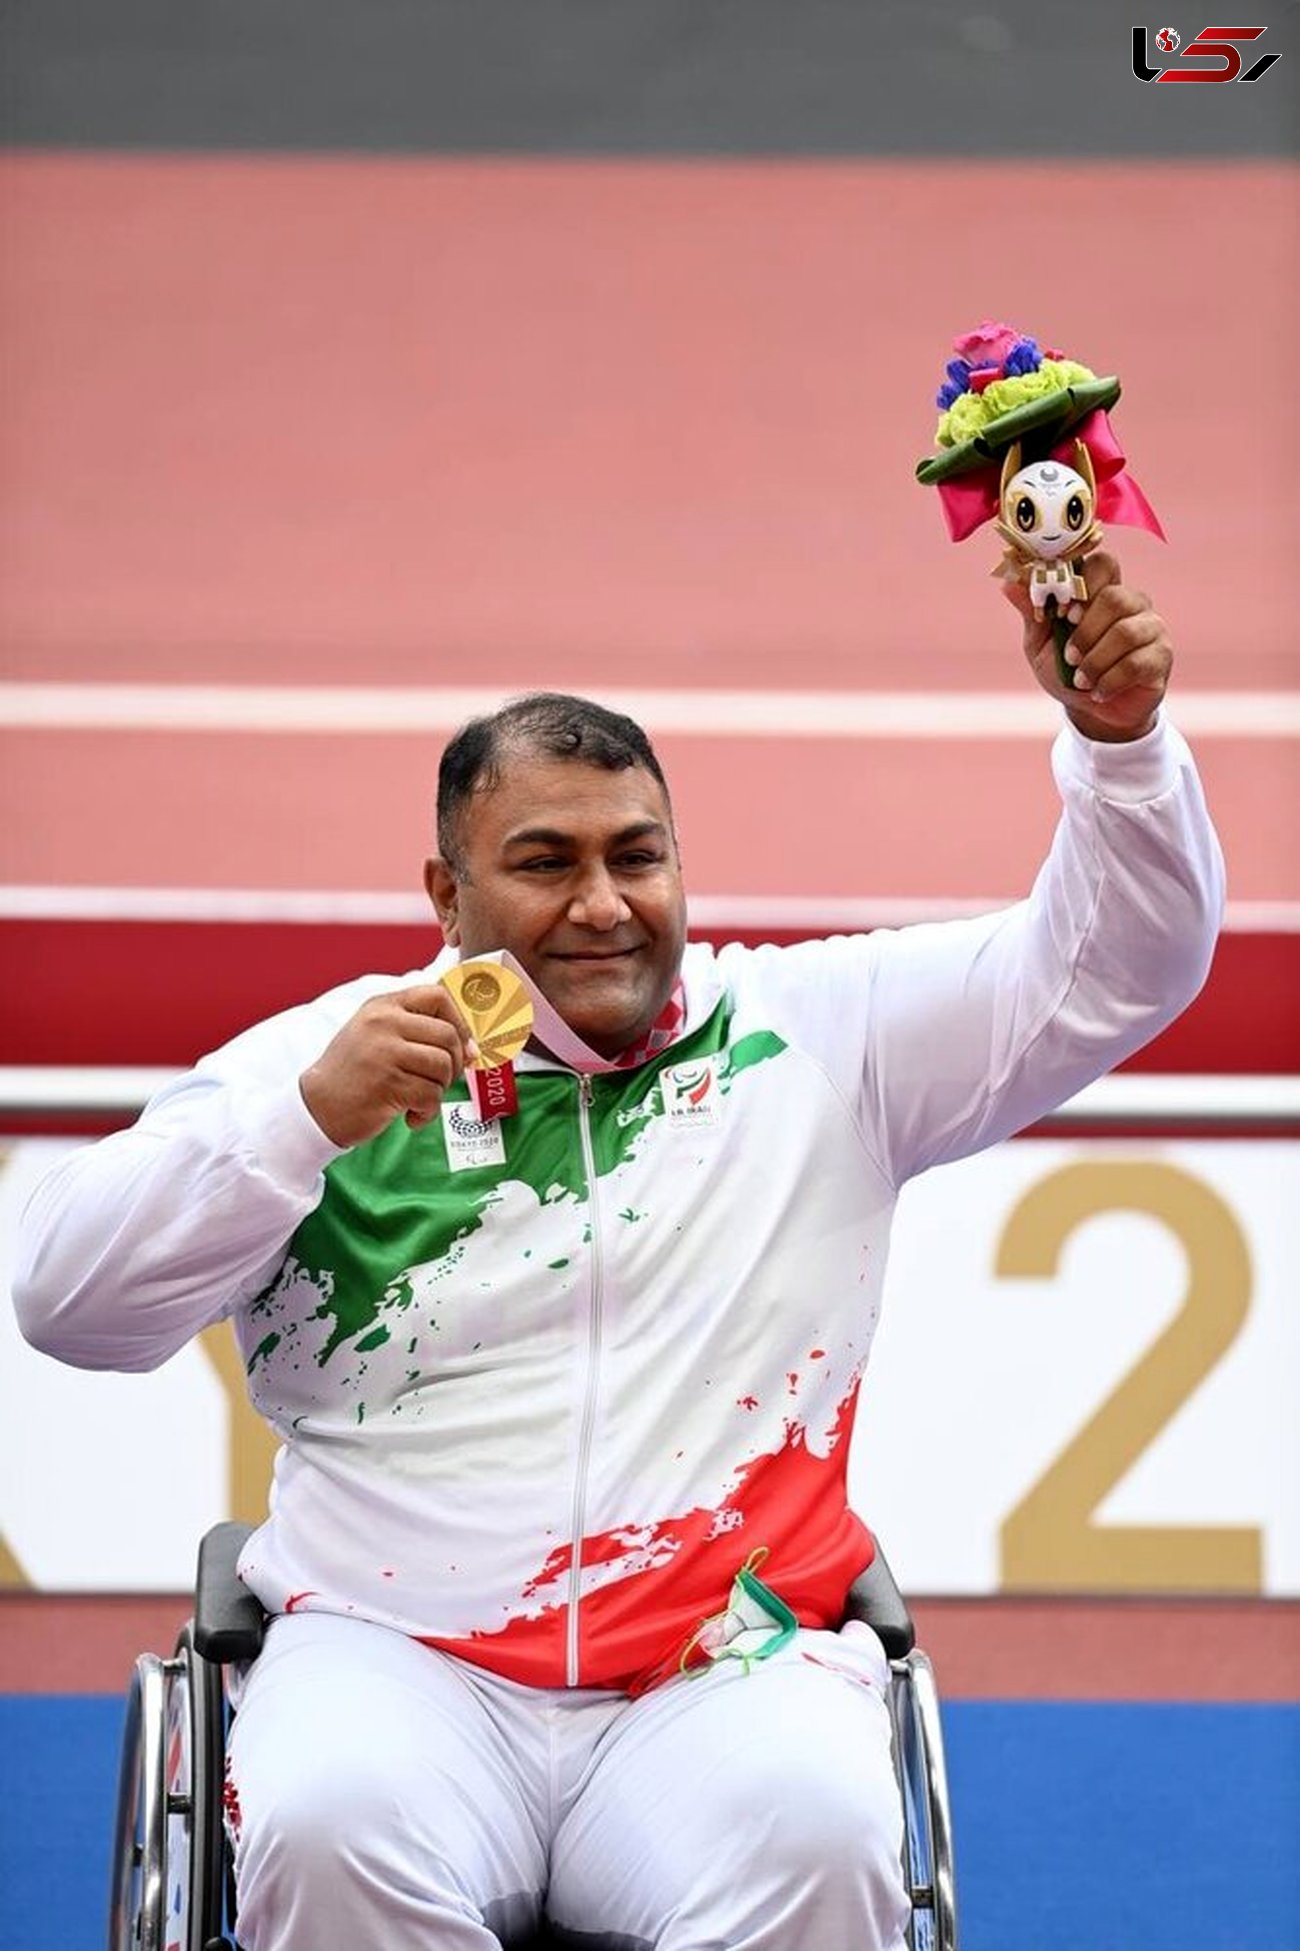 قهرمان لرستانی ۲ مدال پارالمپیک را کسب کرد